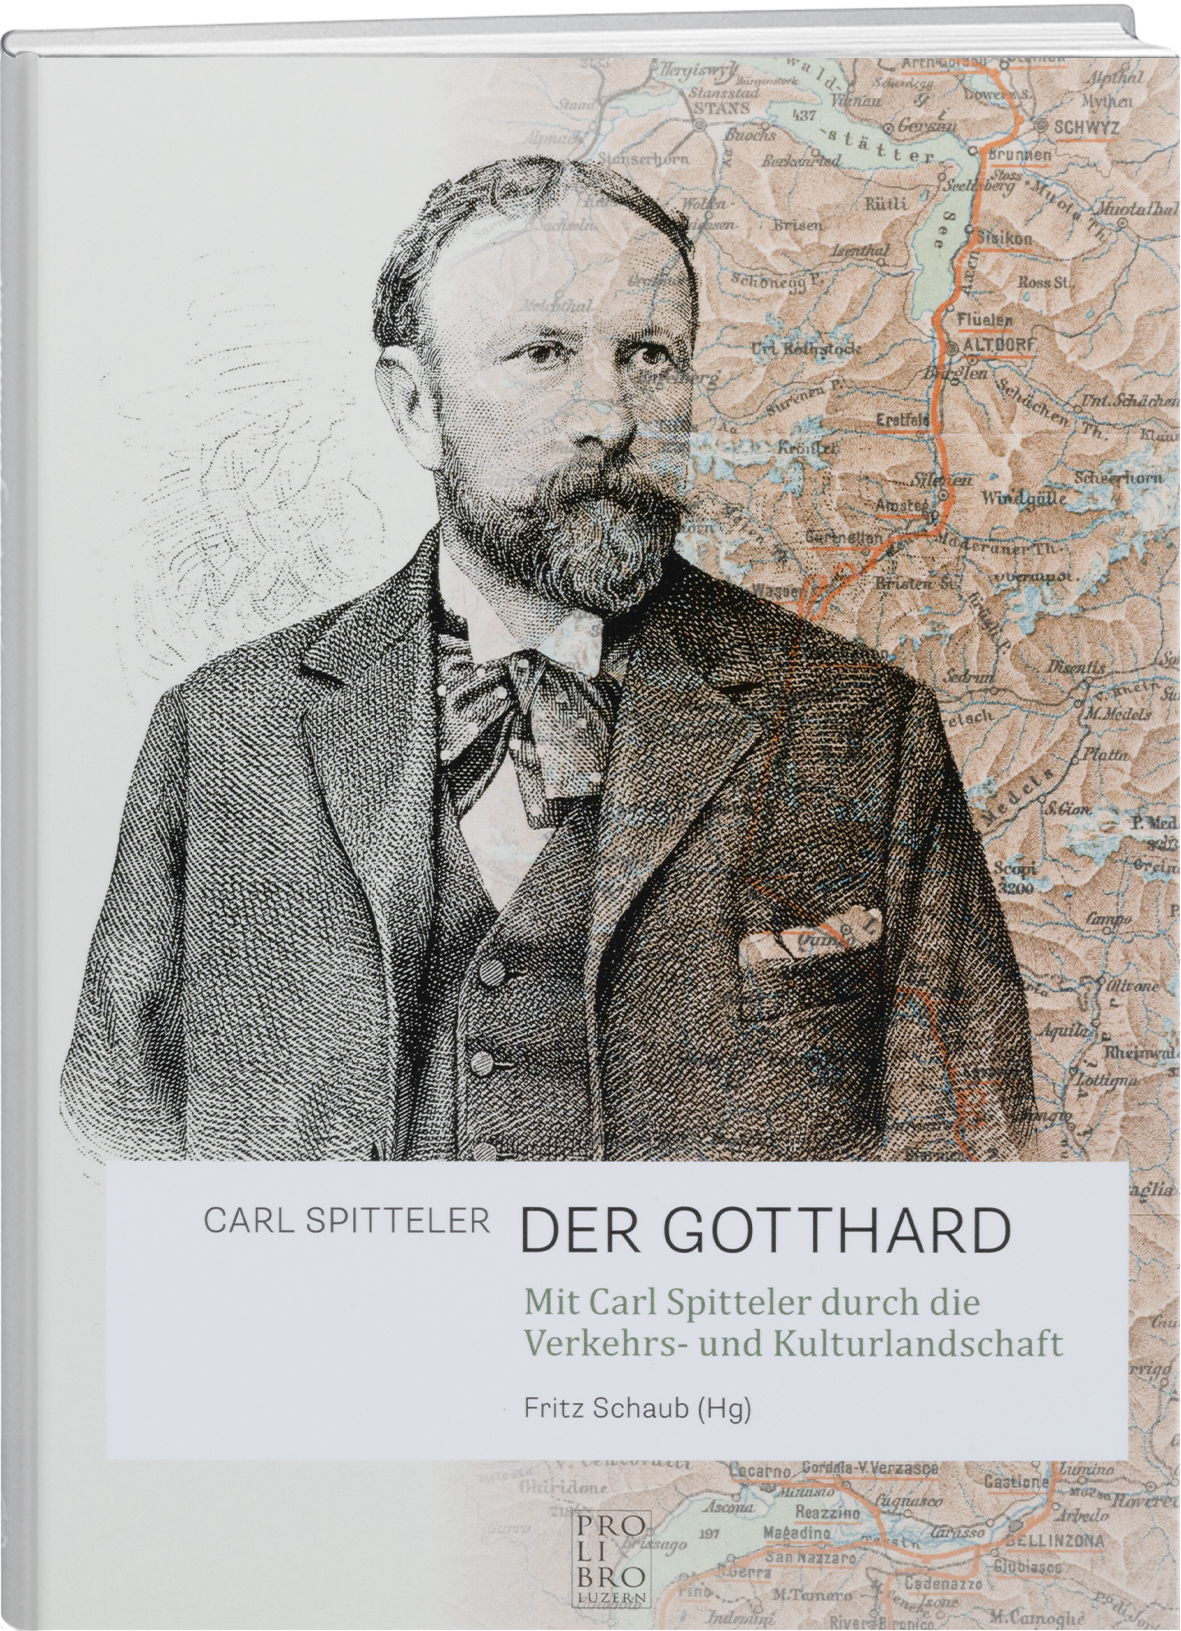 Fritz Schaub: Carl Spitteler – «Der Gotthard» - prolibro.ch